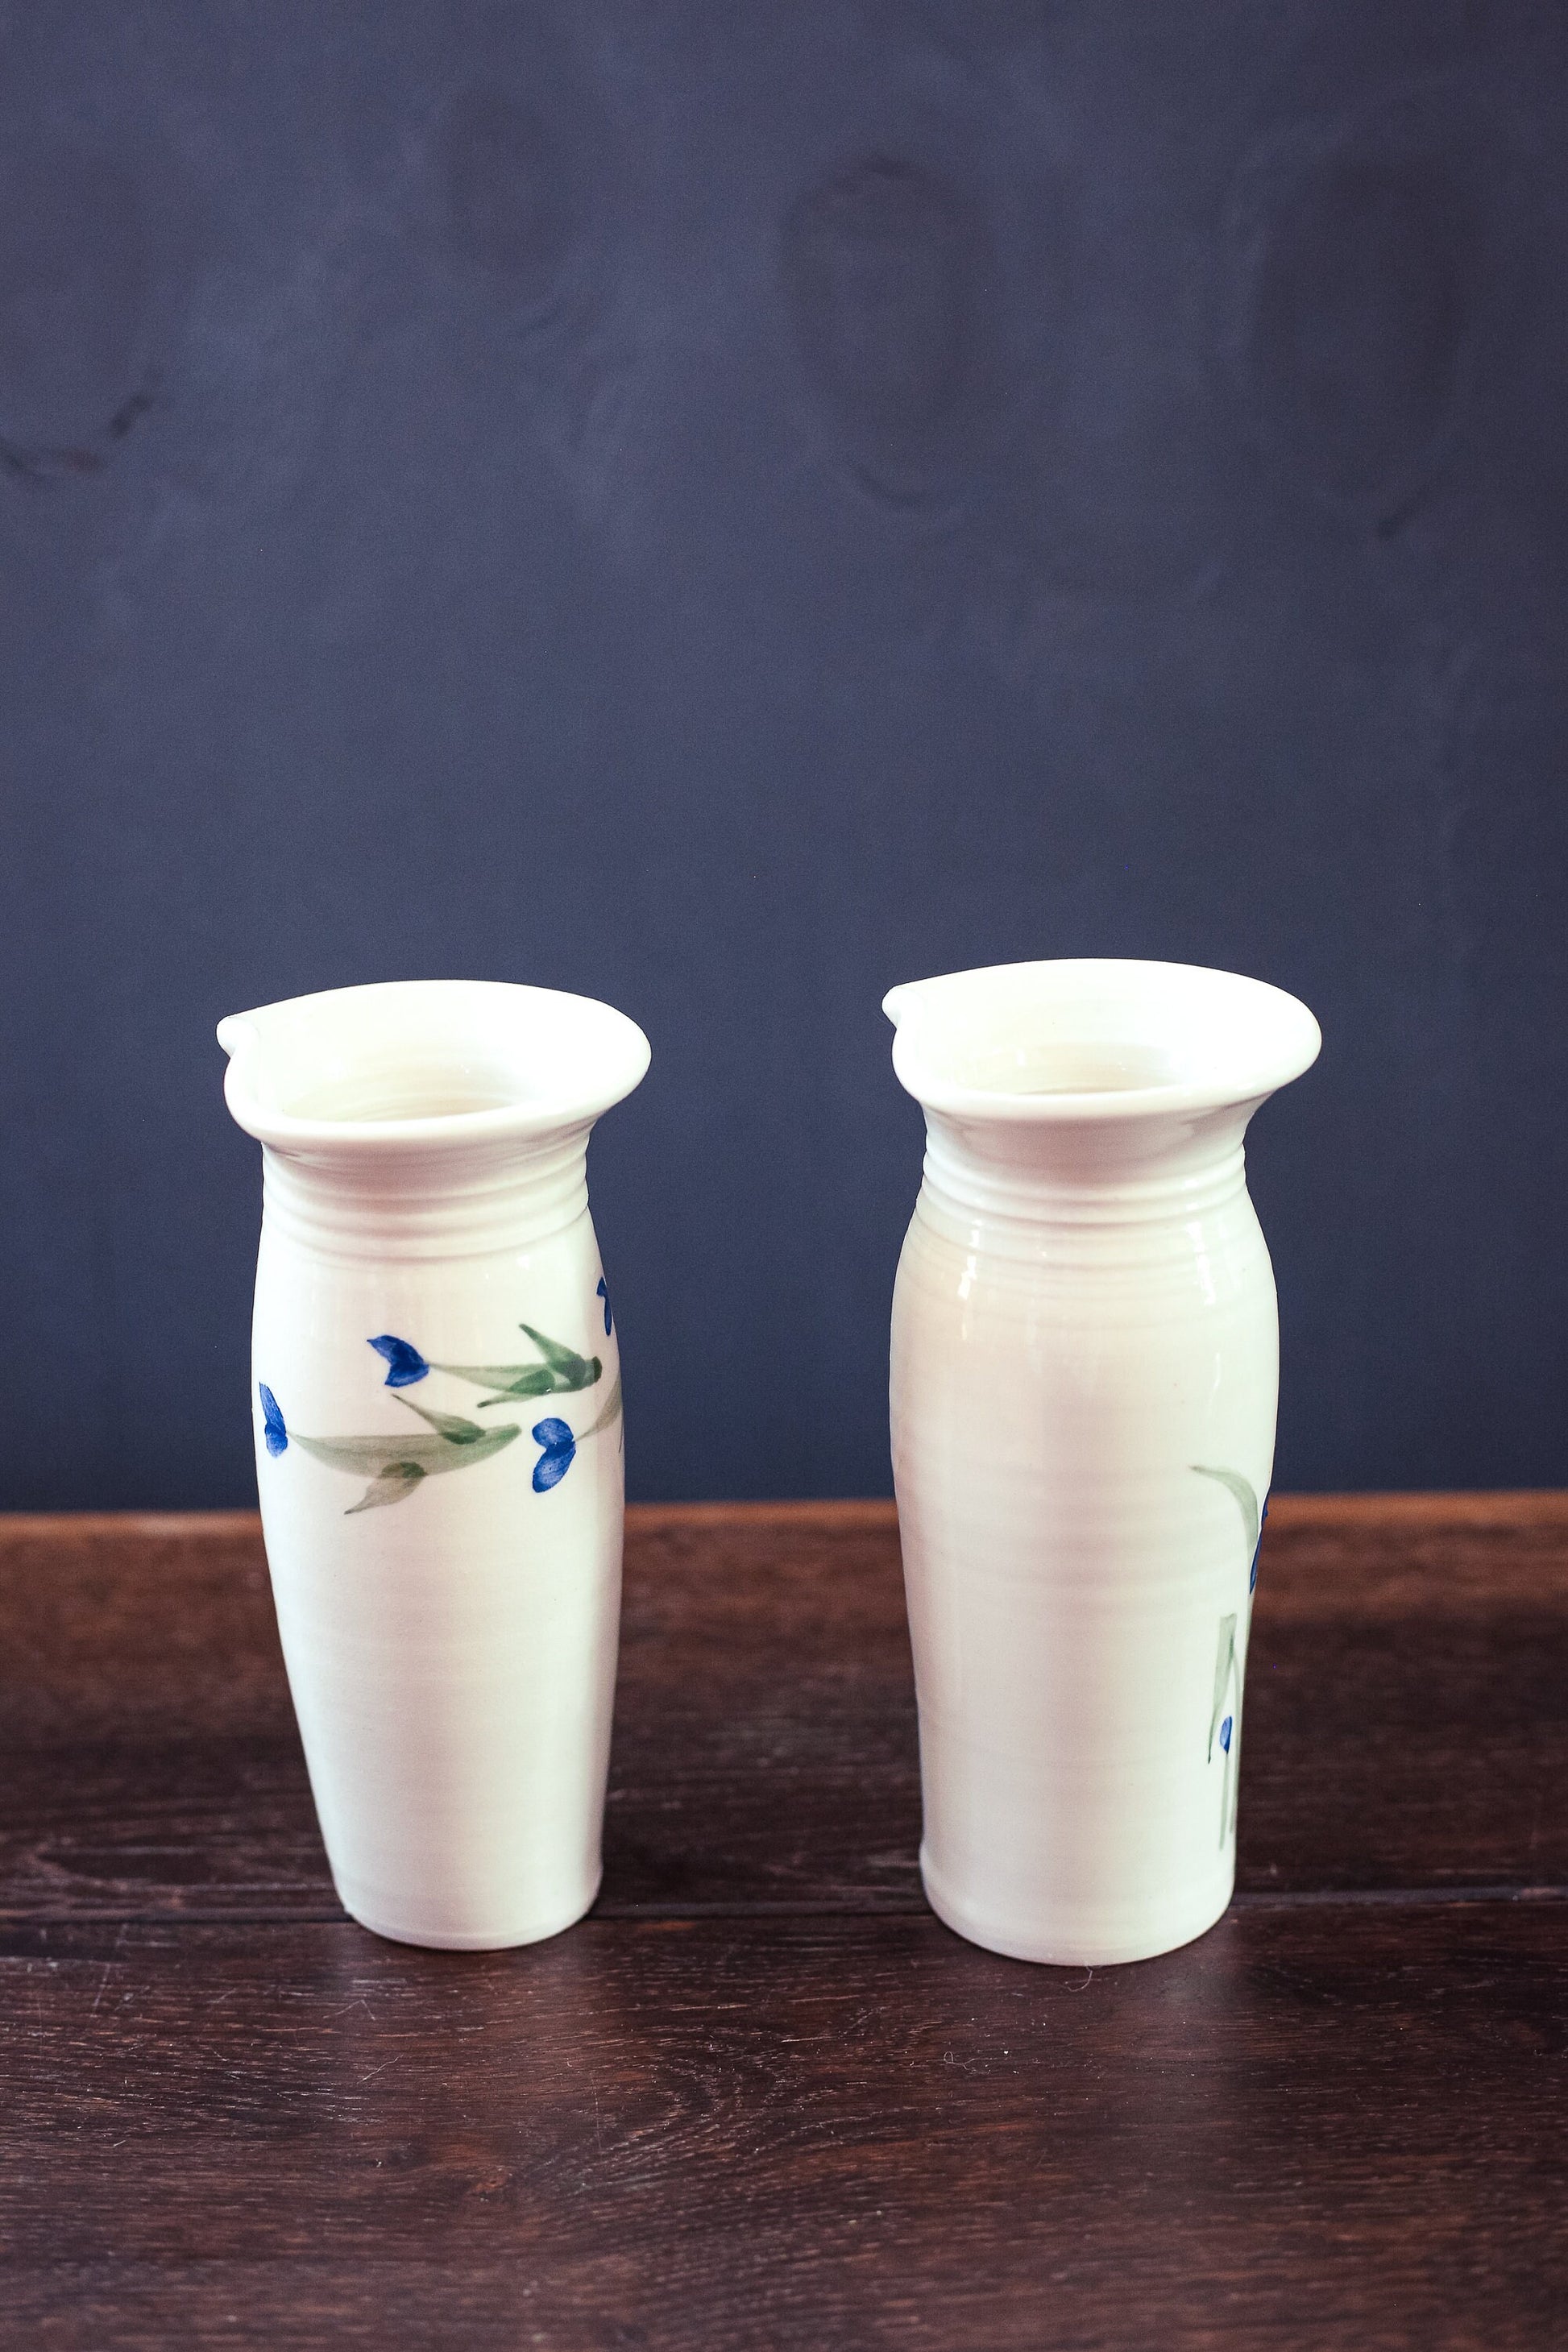 Pair of Hanging Vases with Handpainted Flowers - Vintage Studio Ceramic Wall Vases